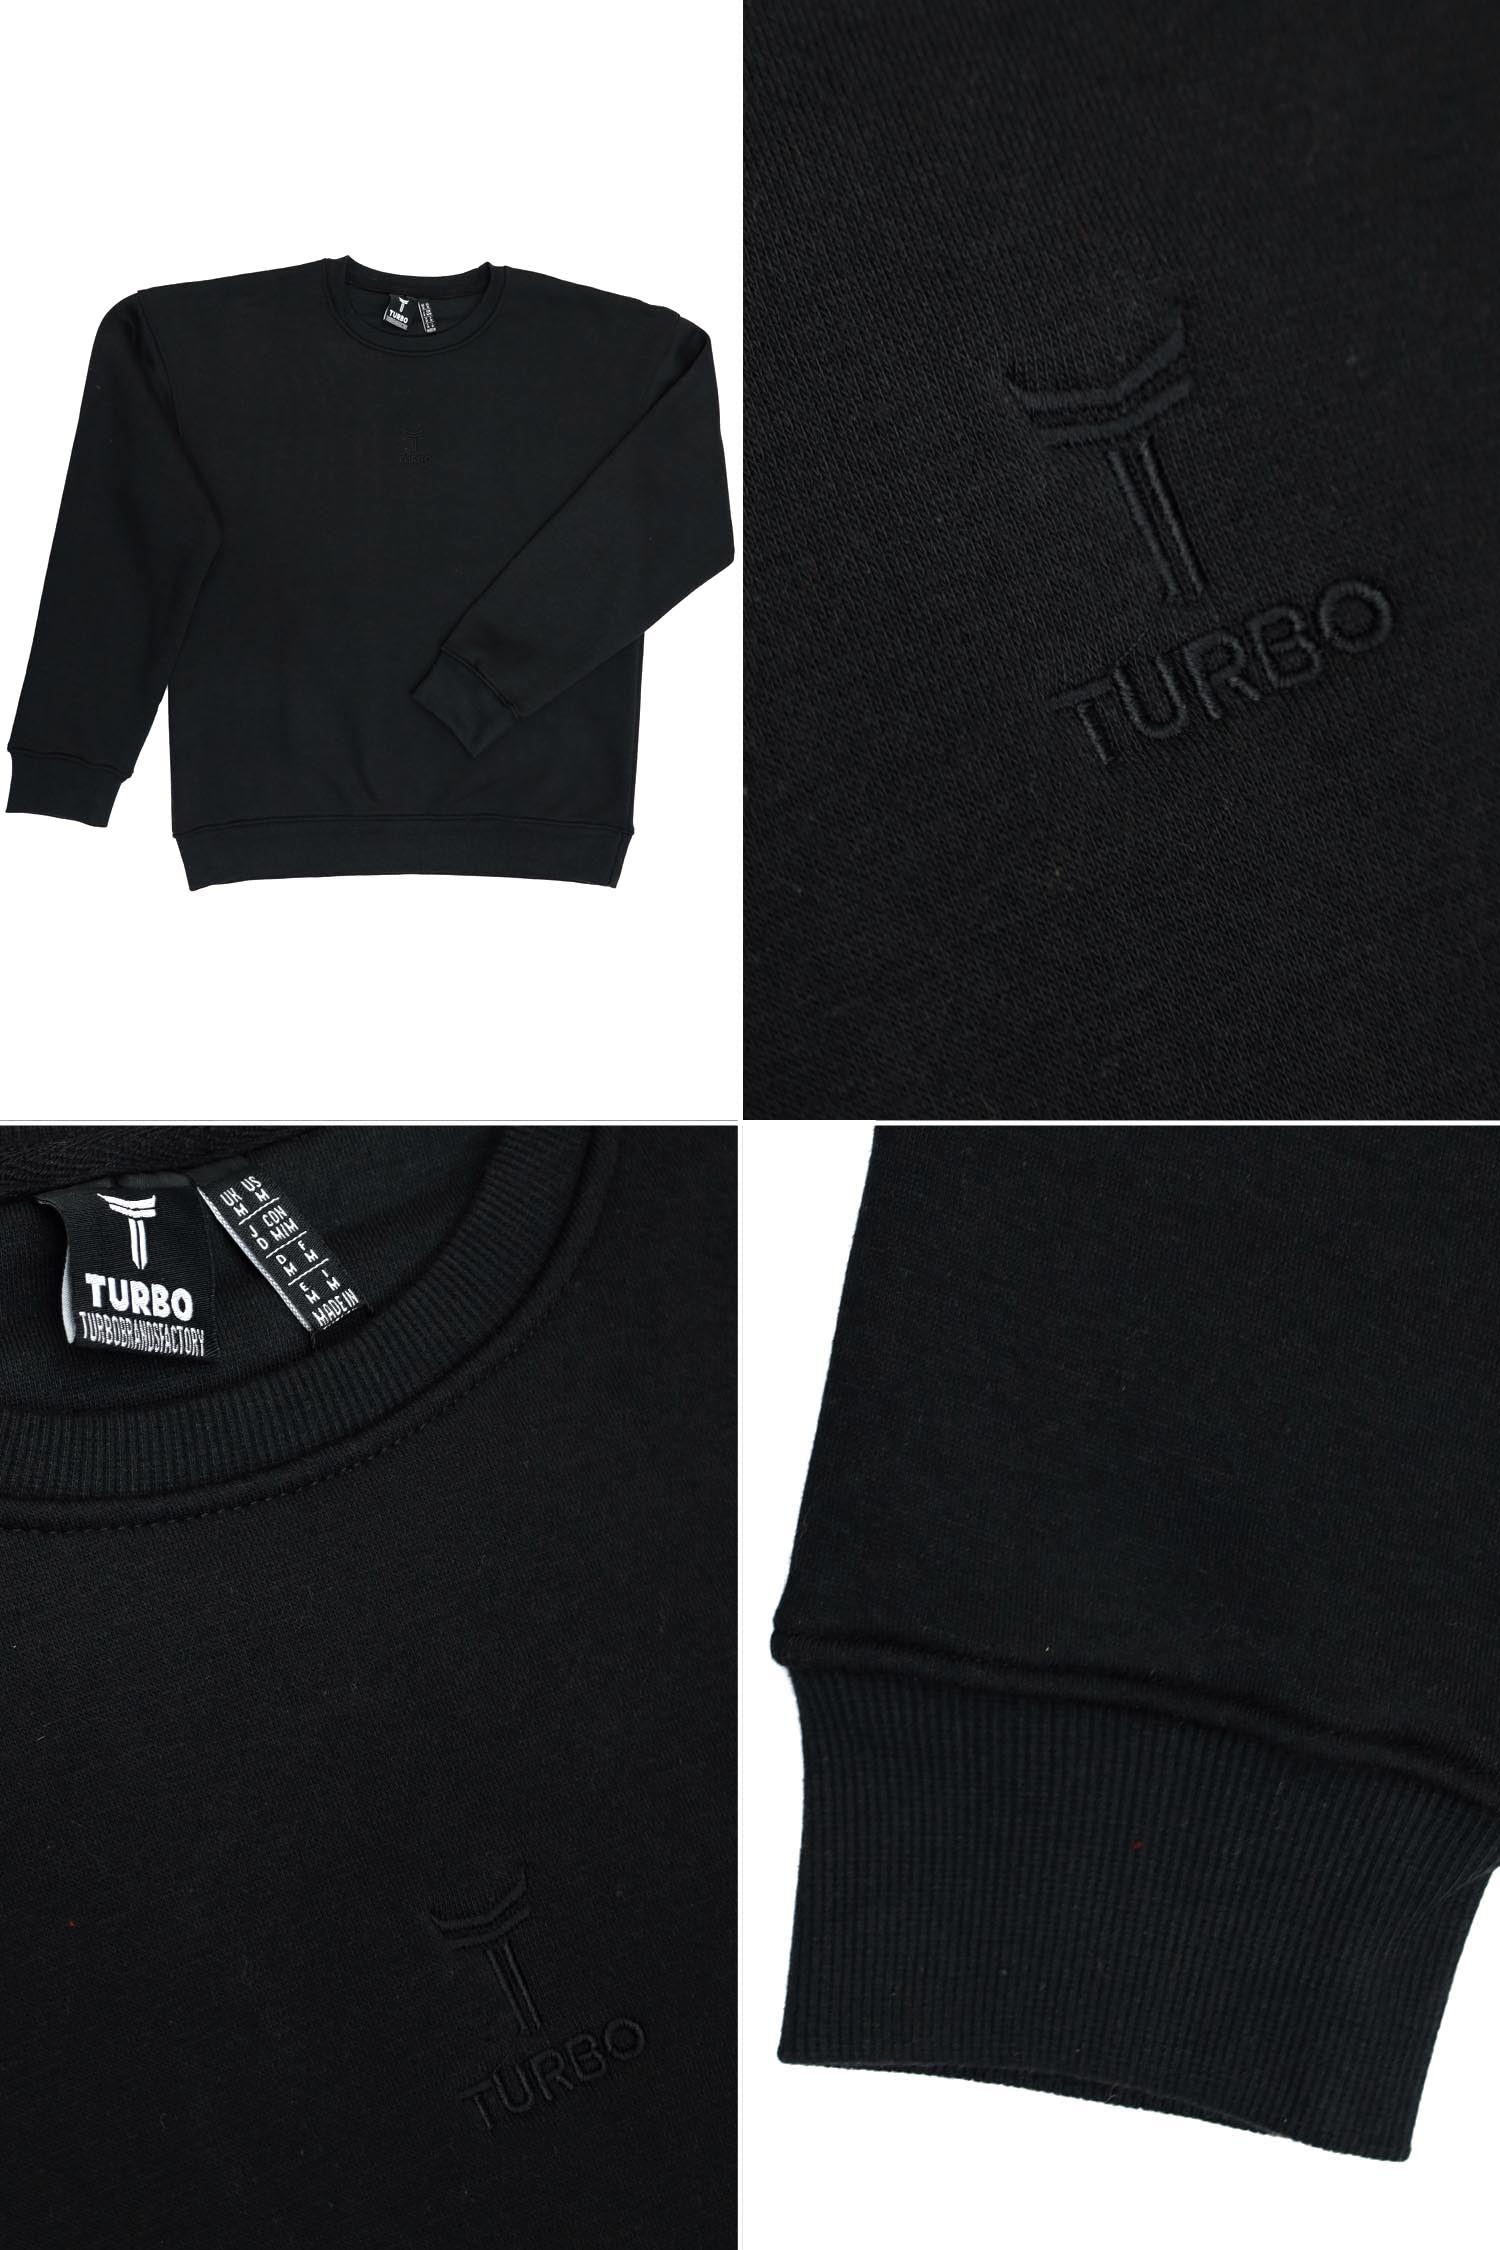 Turbo Men's Over Size Sweatshirt